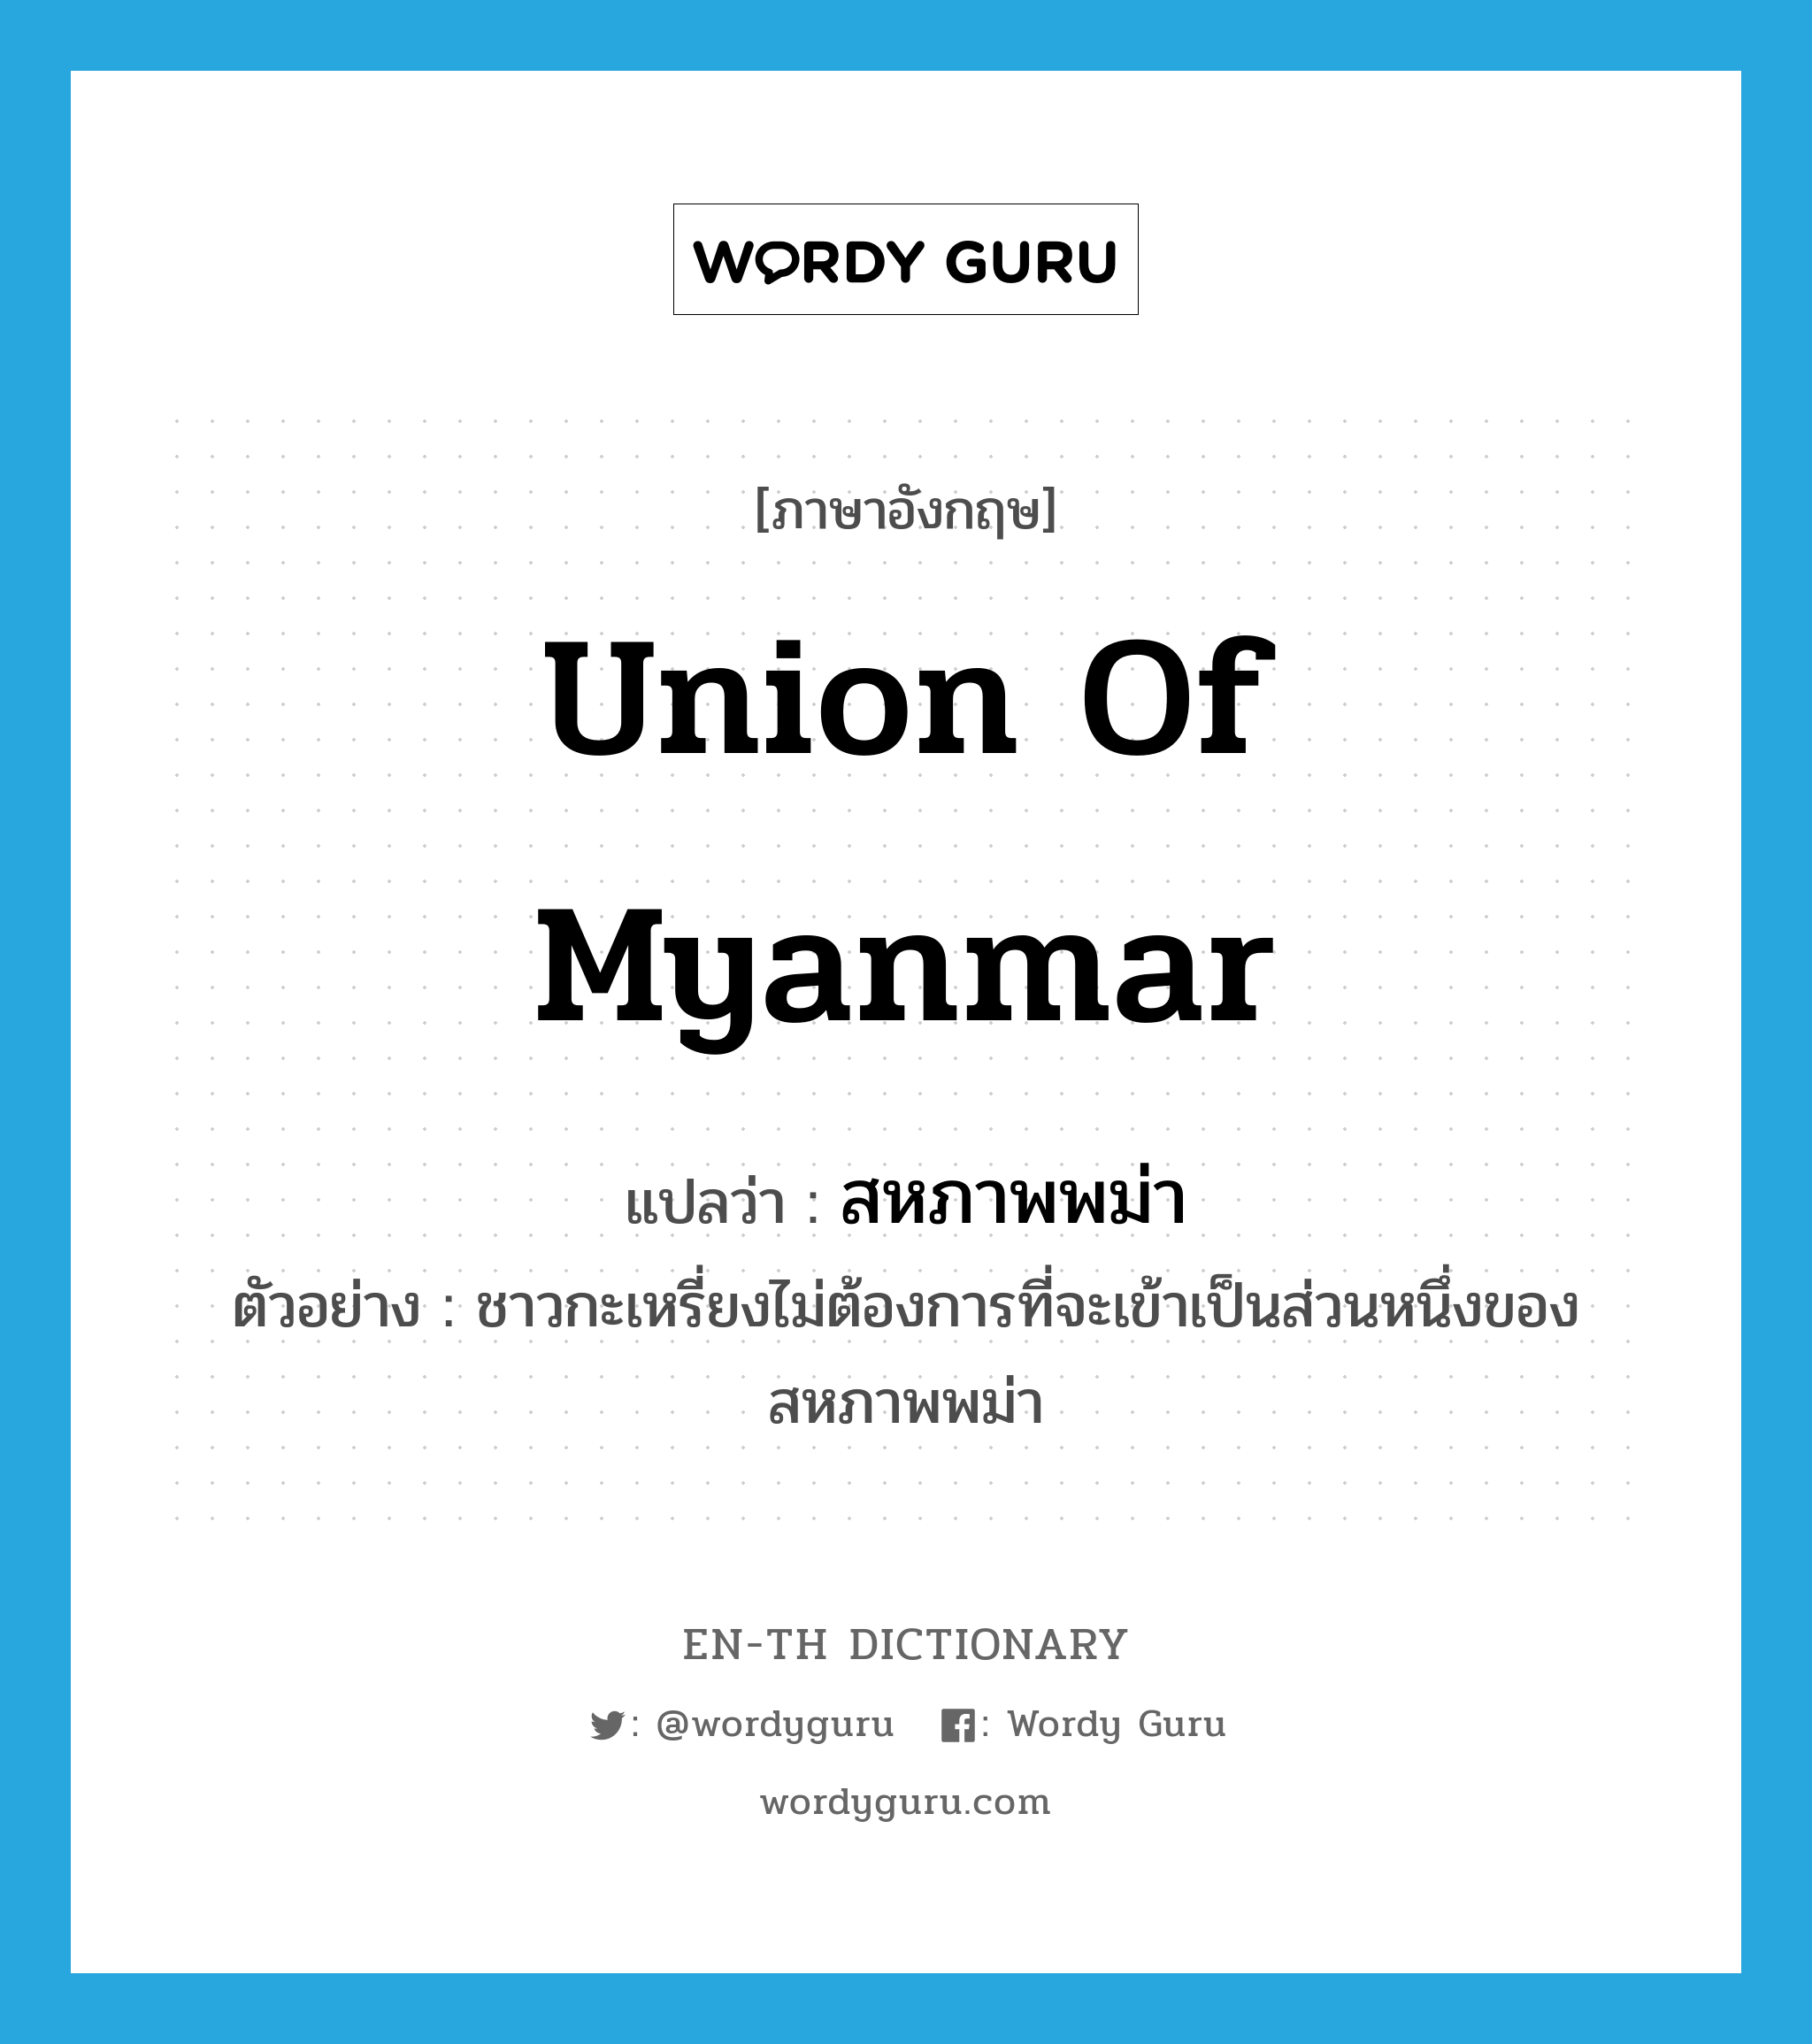 สหภาพพม่า ภาษาอังกฤษ?, คำศัพท์ภาษาอังกฤษ สหภาพพม่า แปลว่า Union of Myanmar ประเภท N ตัวอย่าง ชาวกะเหรี่ยงไม่ต้องการที่จะเข้าเป็นส่วนหนึ่งของสหภาพพม่า หมวด N